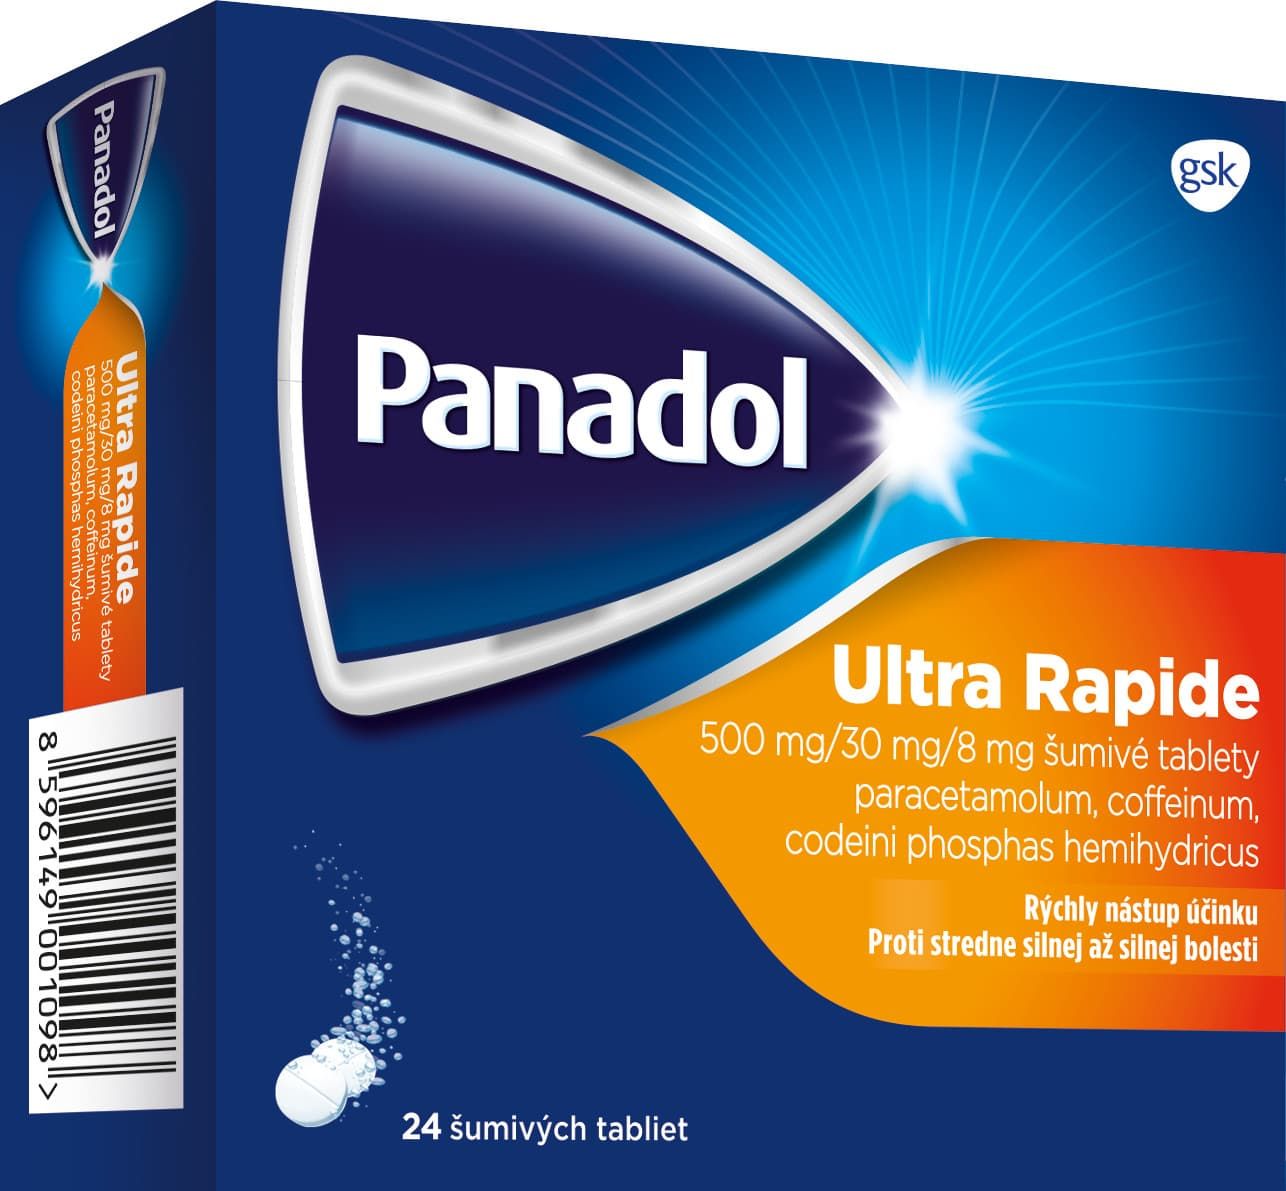 Panadol Ultra Rapide šumivé tablety, stredne silná až silná bolesť 24 šumivých tabliet